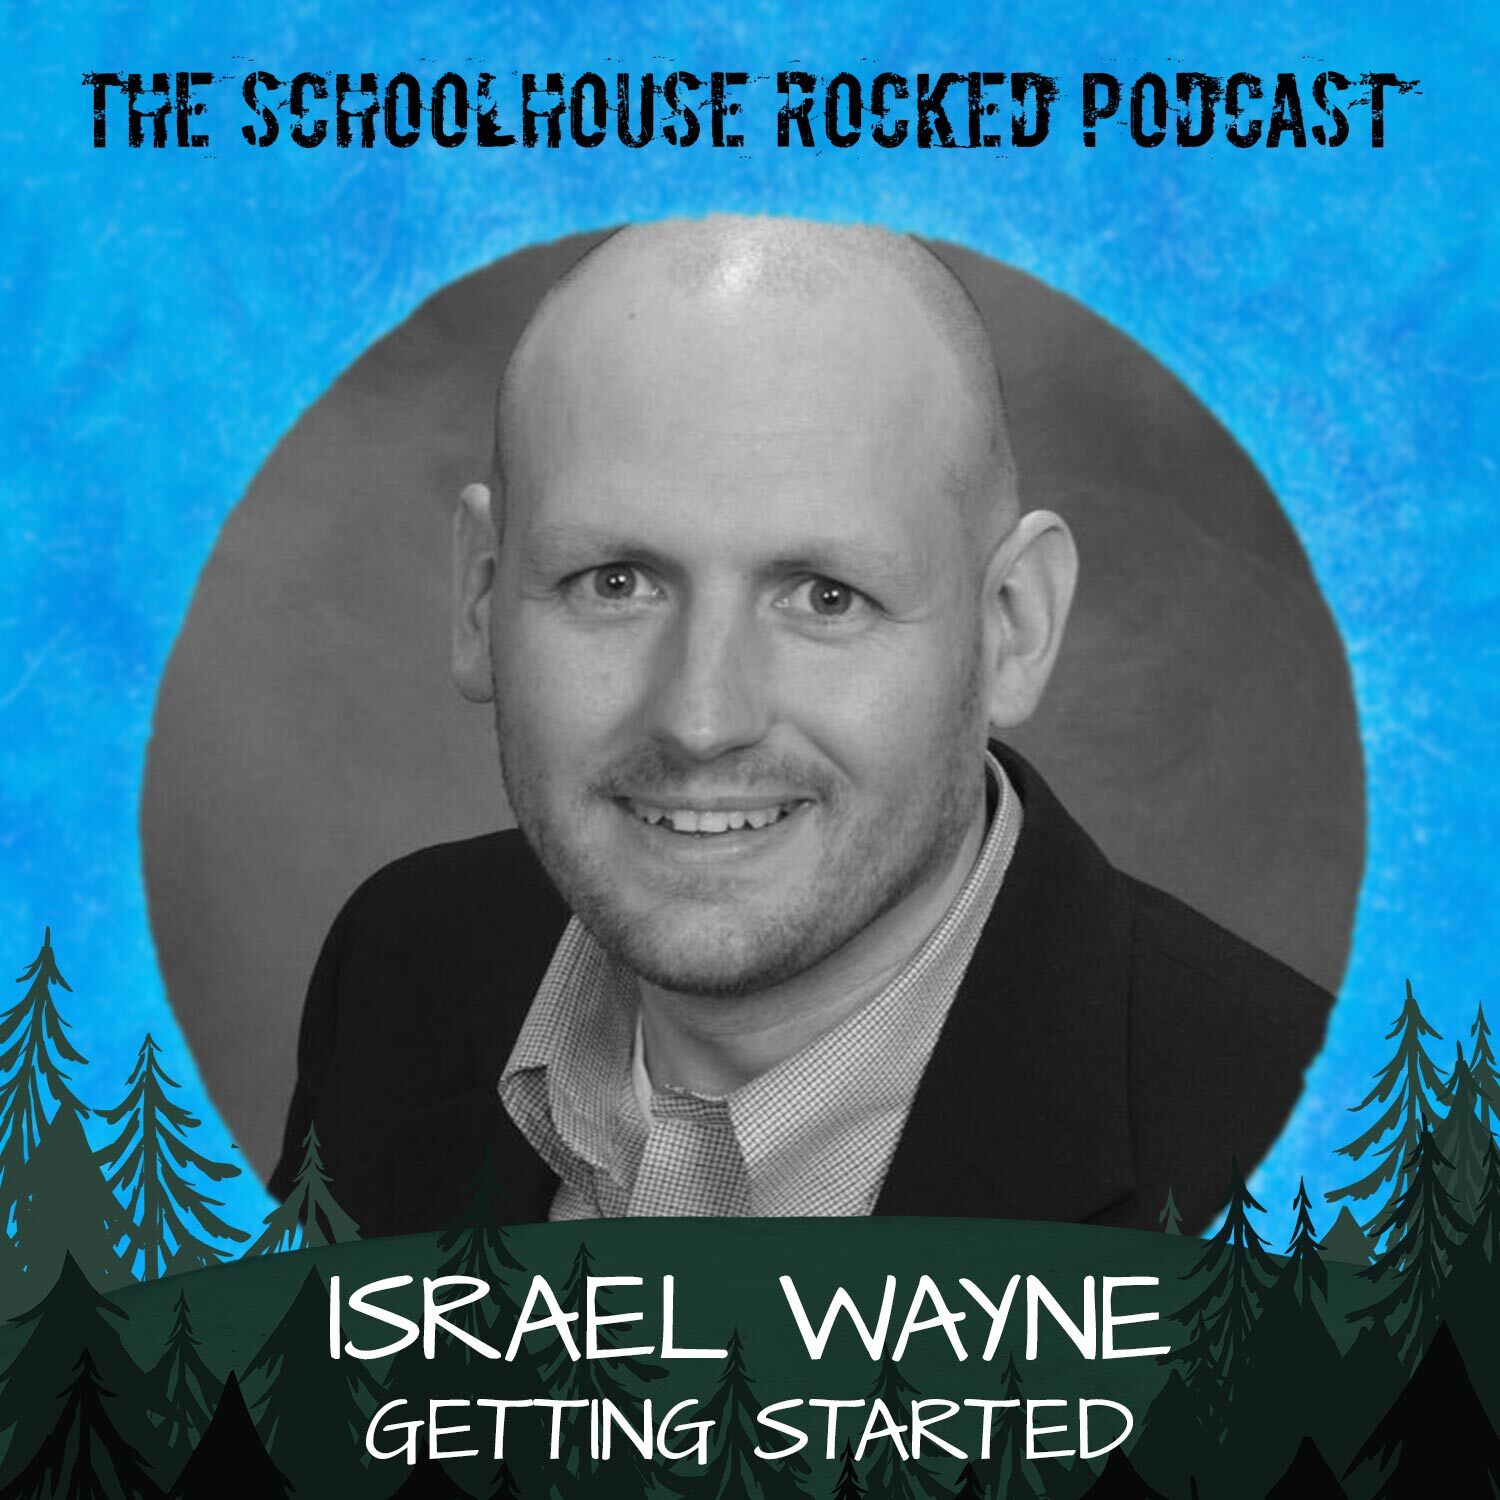 Israel Wayne - Getting Started in Homeschooling